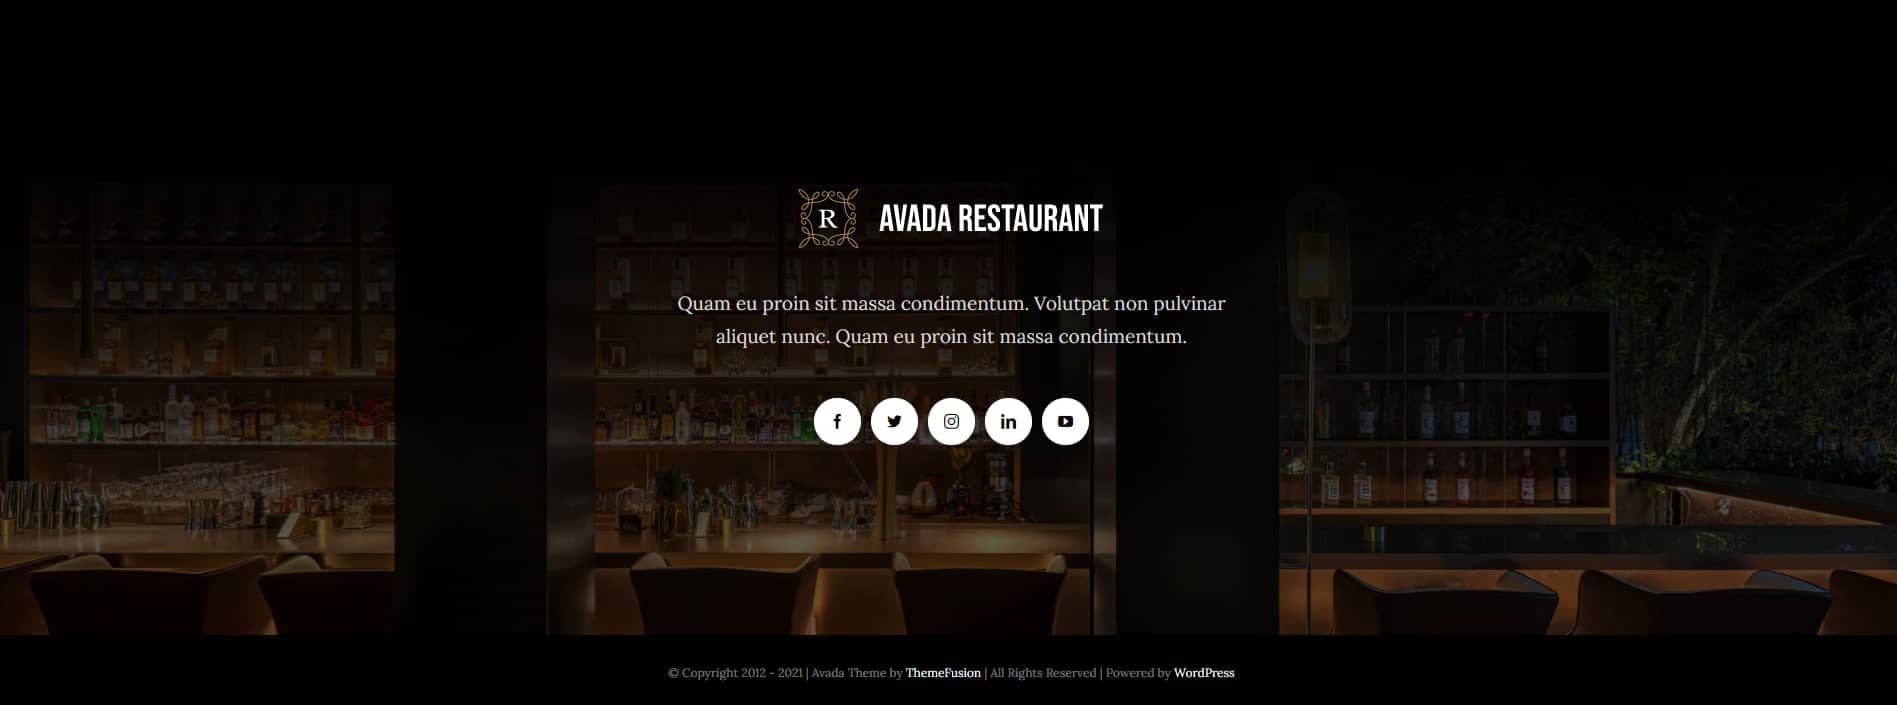 Avada Restaurant Footer